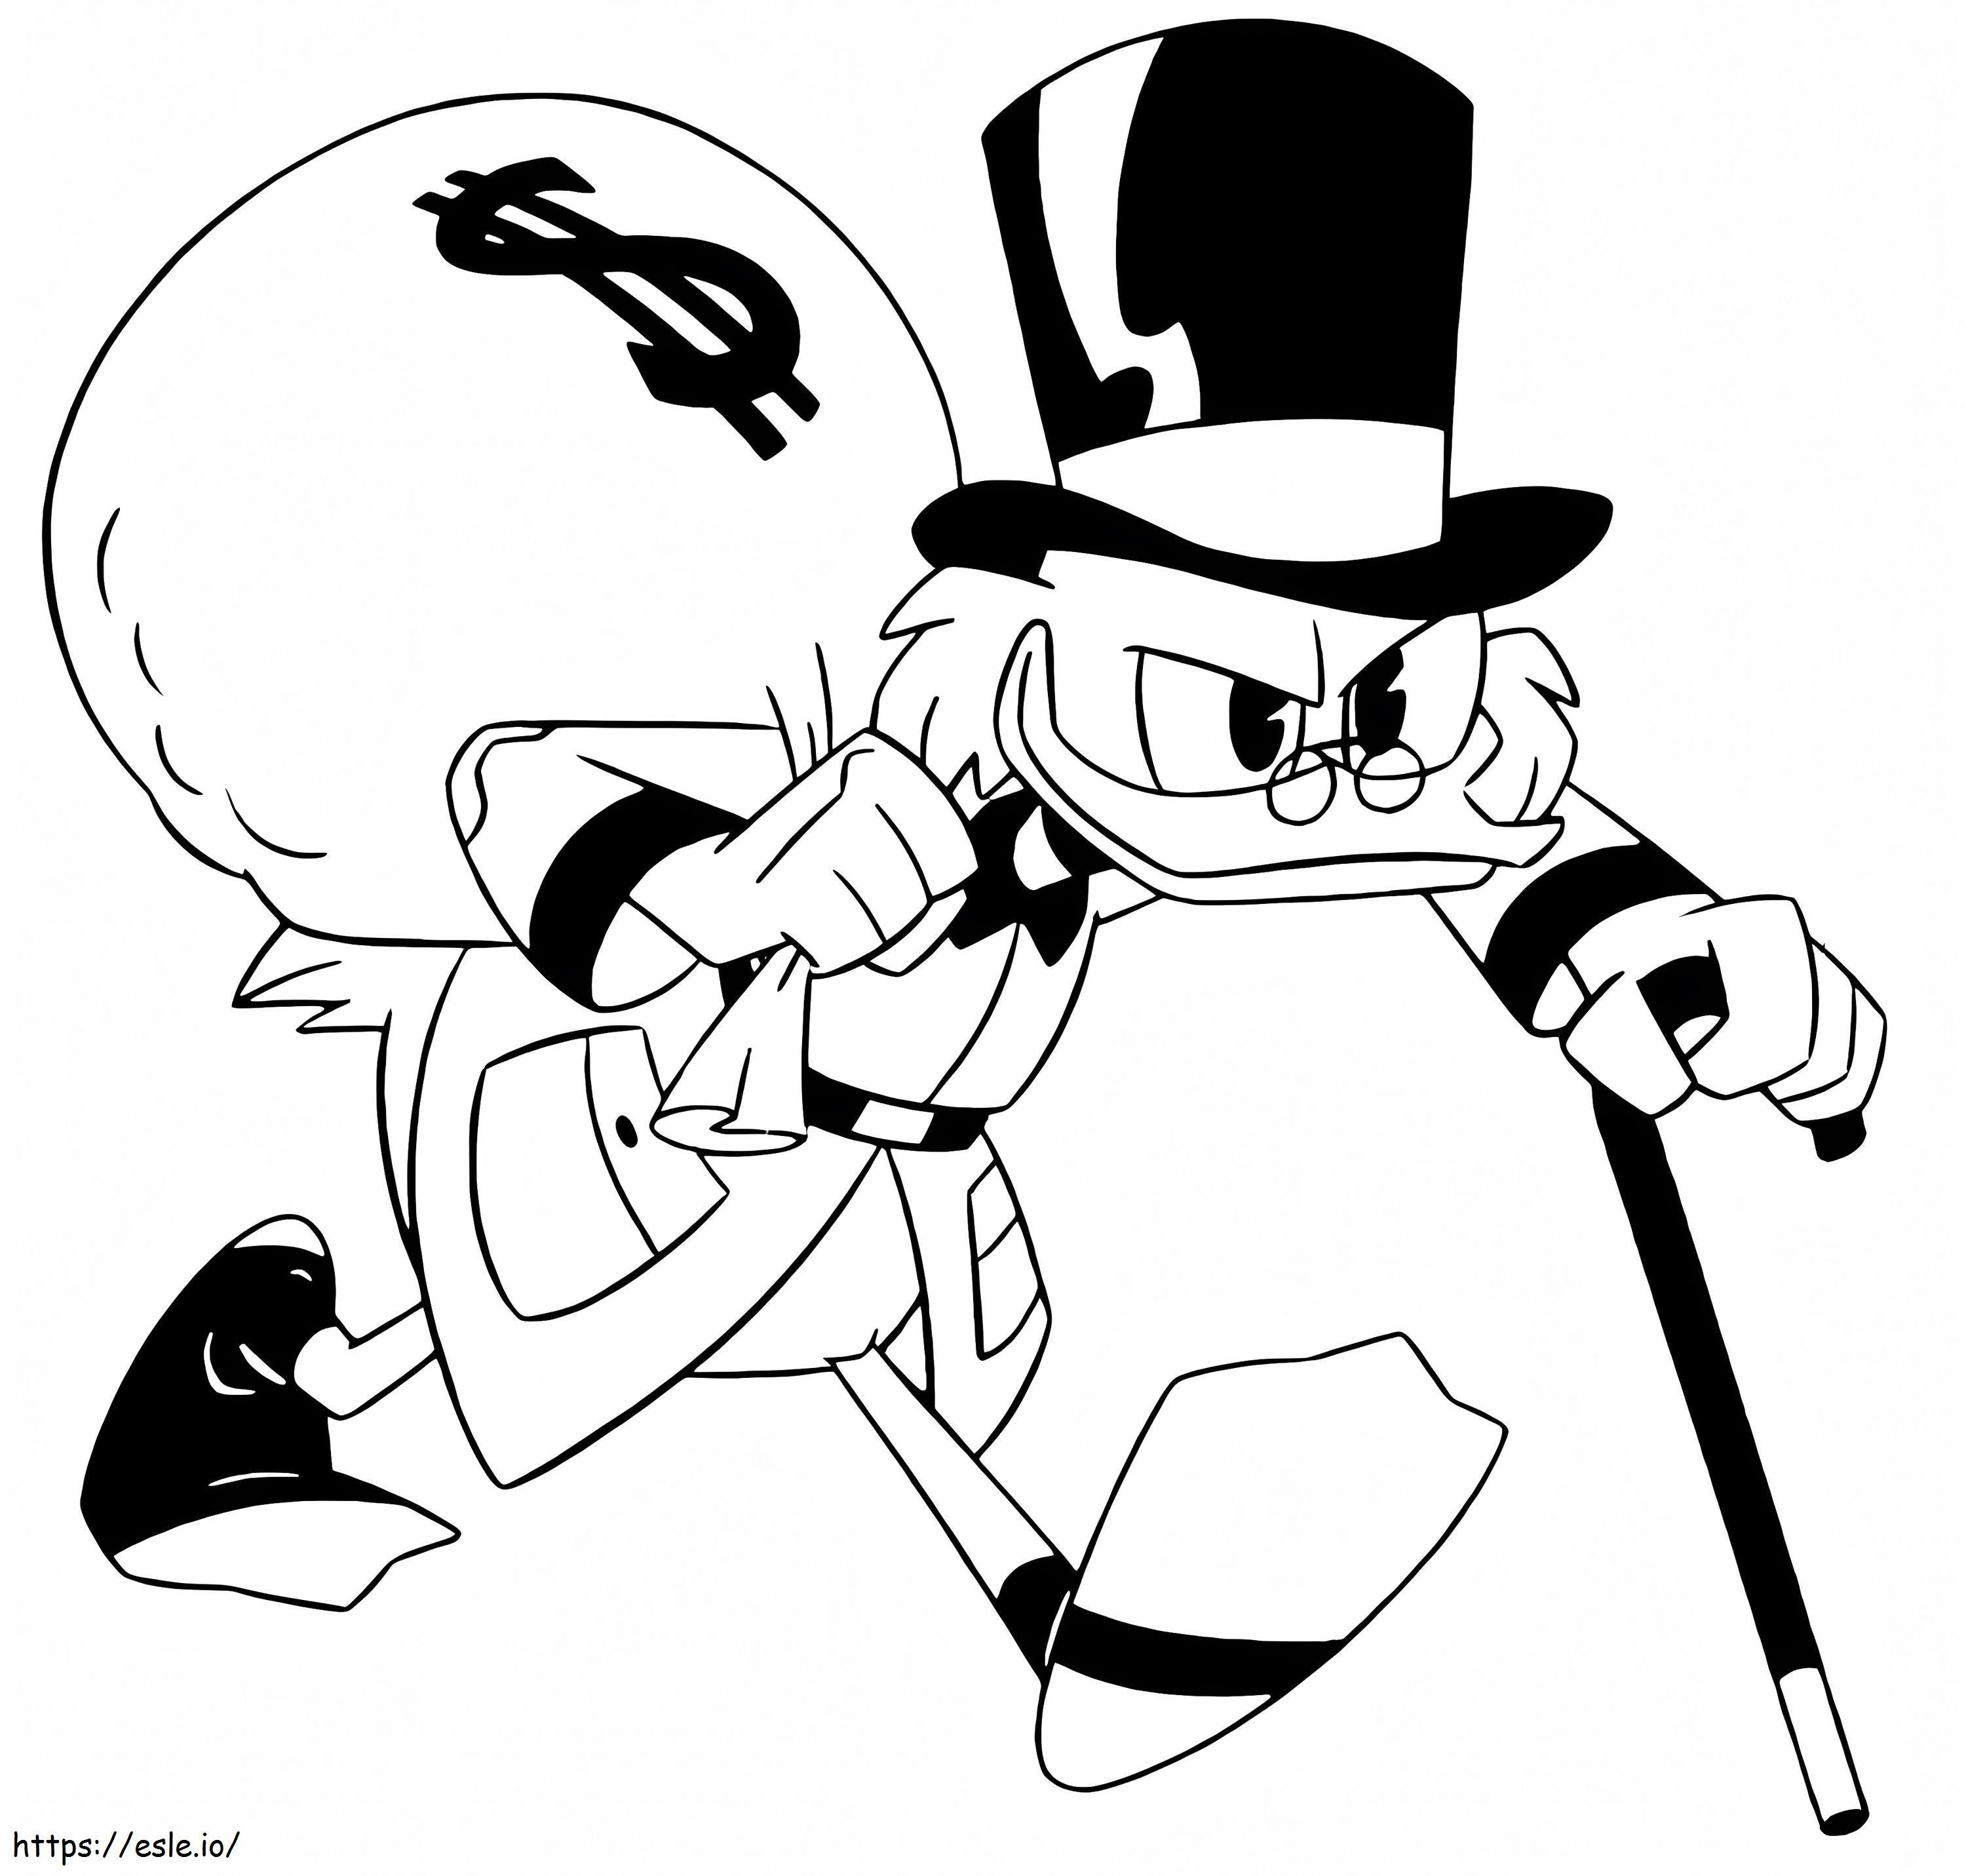 Scrooge McDuck con bolsa de dinero para colorear